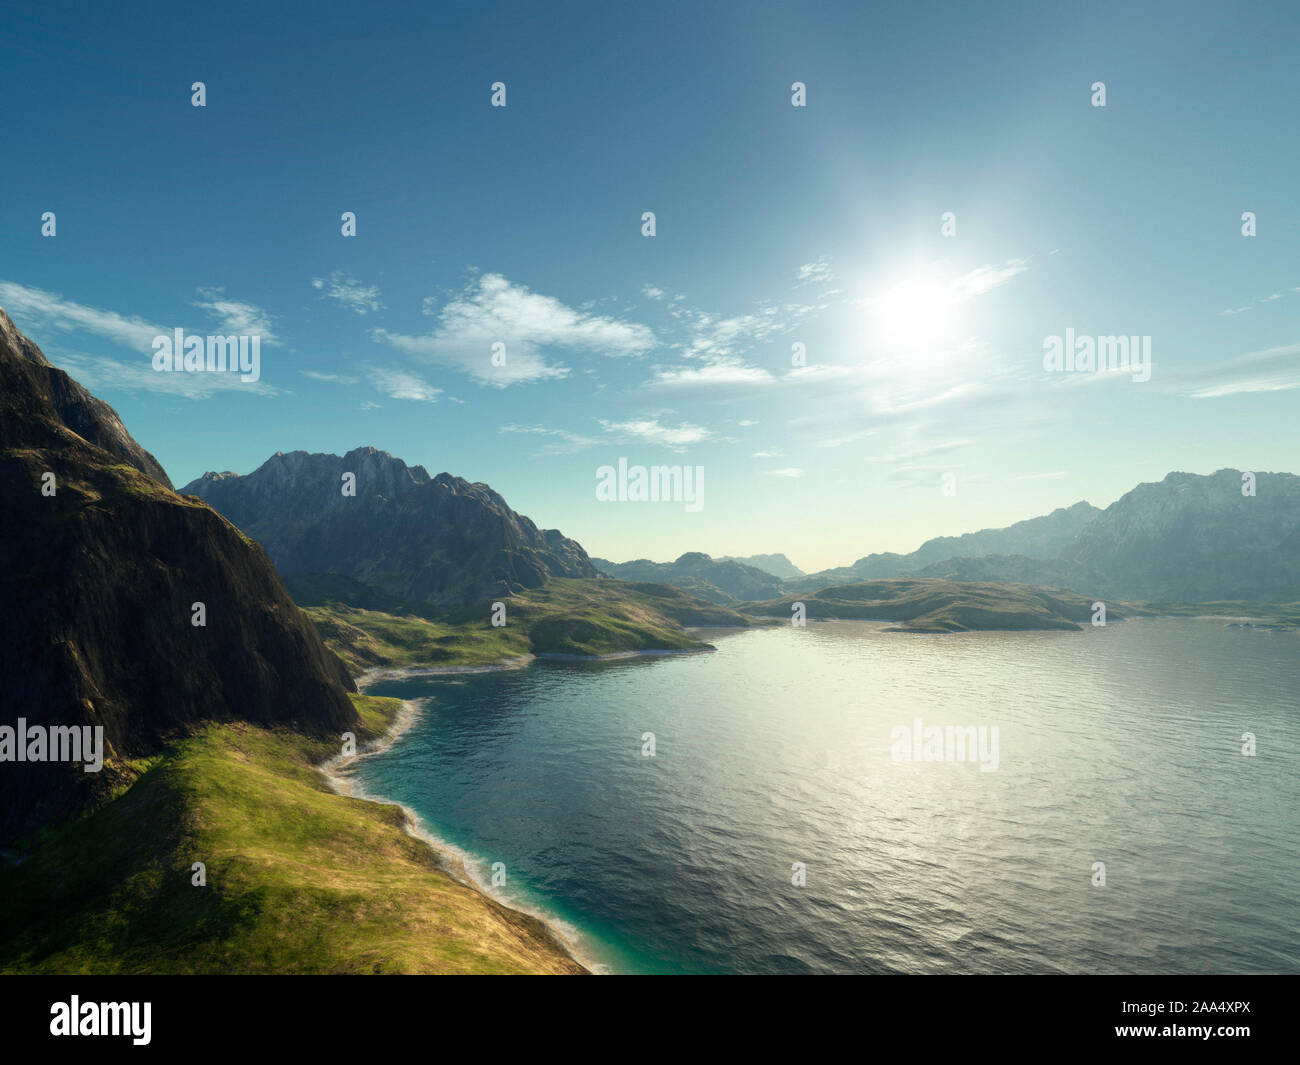 Eine wunderschoene Fantasy-Landschaft, die einen wunderschoenen Strand darstellt darstellt Stock Photo